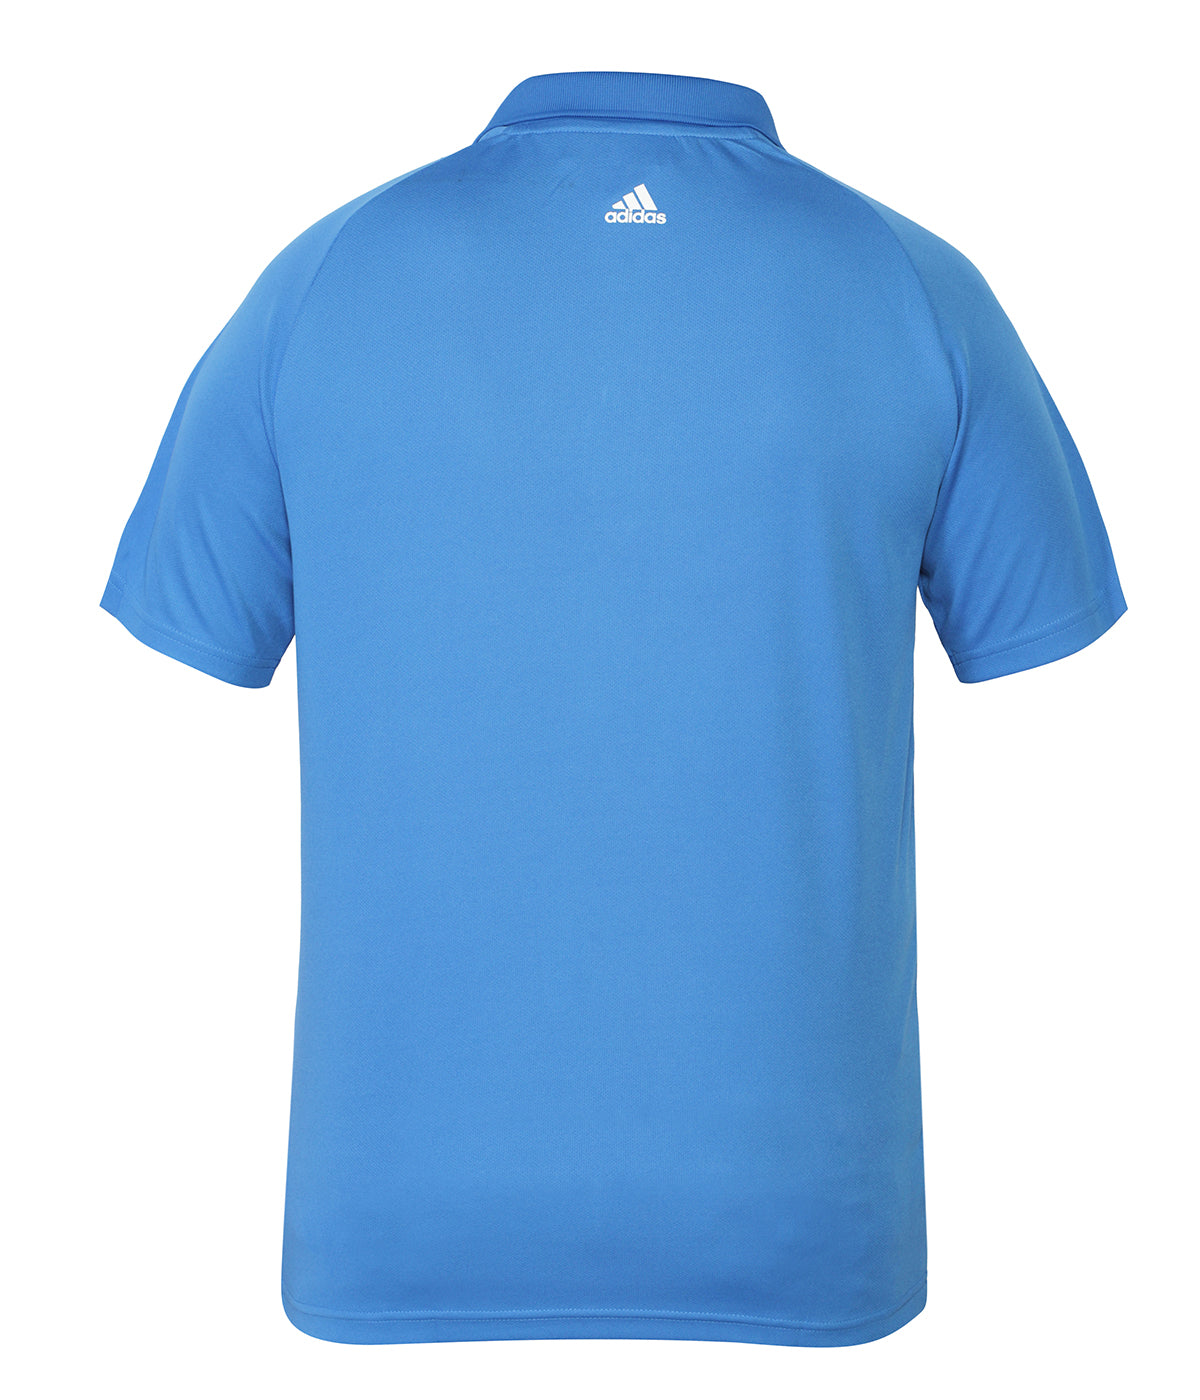 Adidas Polo Tshirt – playR